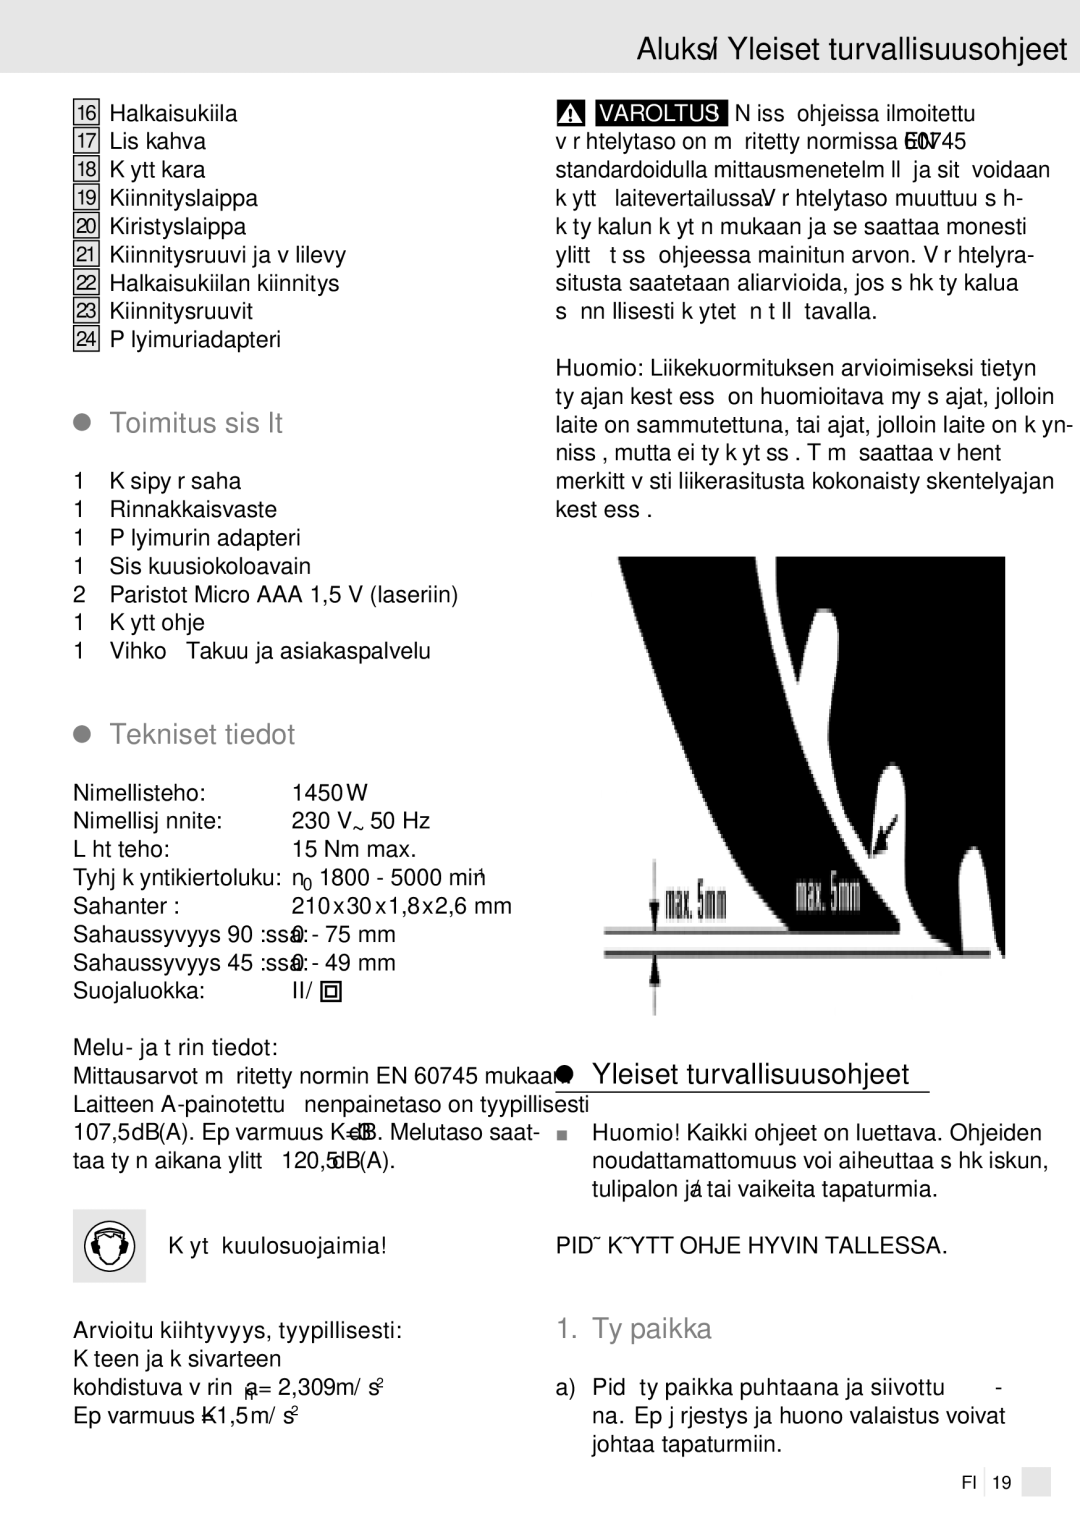 Kompernass PHKS 1450 LASER manual Aluksi / Yleiset turvallisuusohjeet, Toimitus sisältää, Tekniset tiedot, Työpaikka 